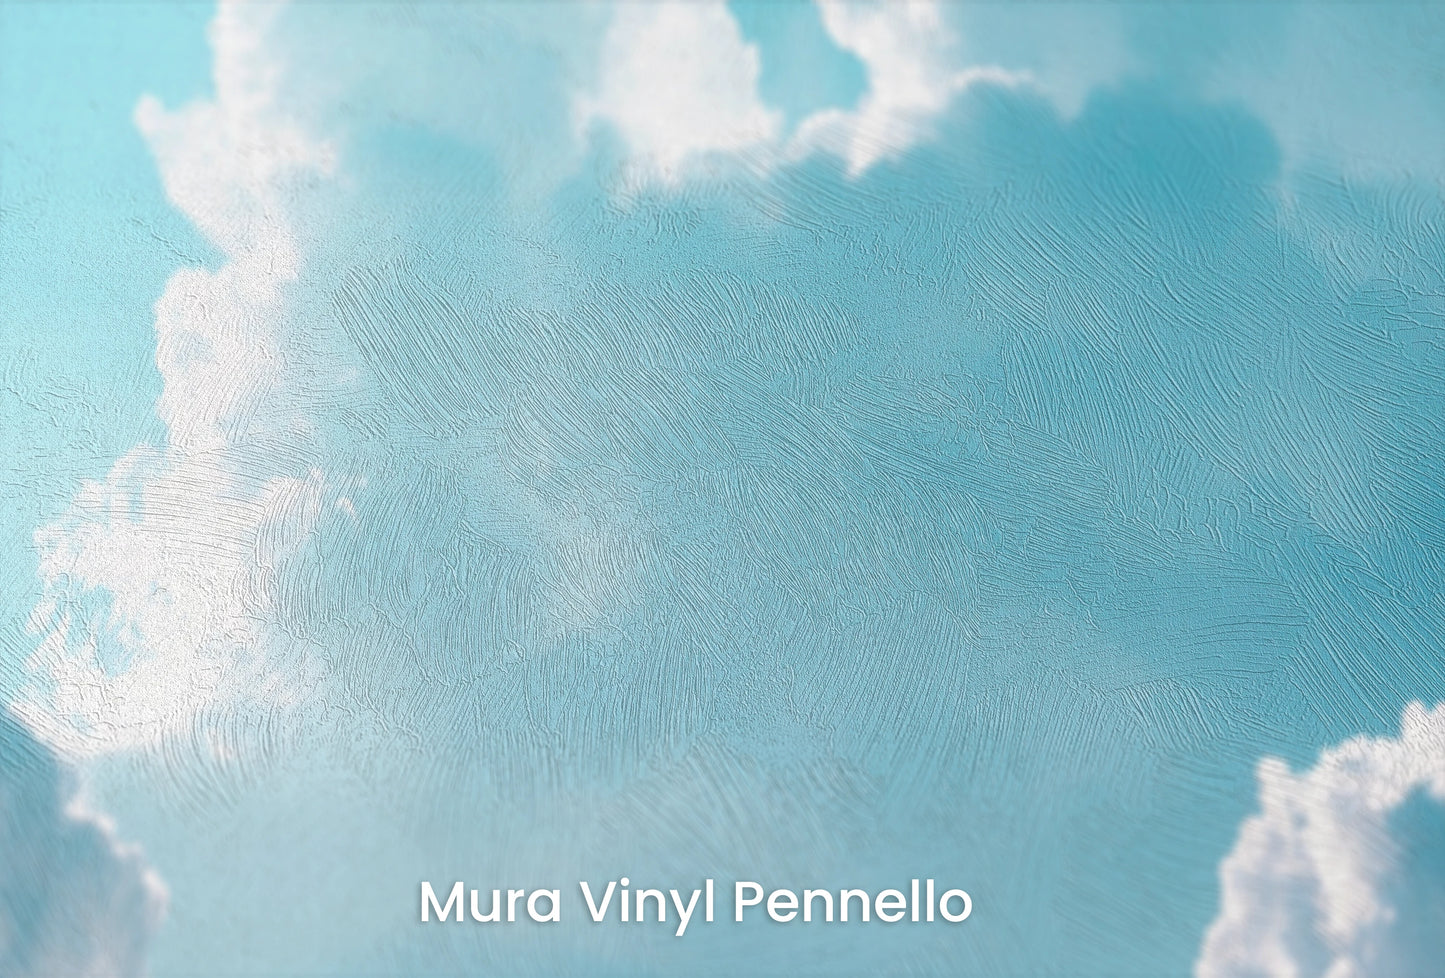 Zbliżenie na artystyczną fototapetę o nazwie Azure Calm na podłożu Mura Vinyl Pennello - faktura pociągnięć pędzla malarskiego.